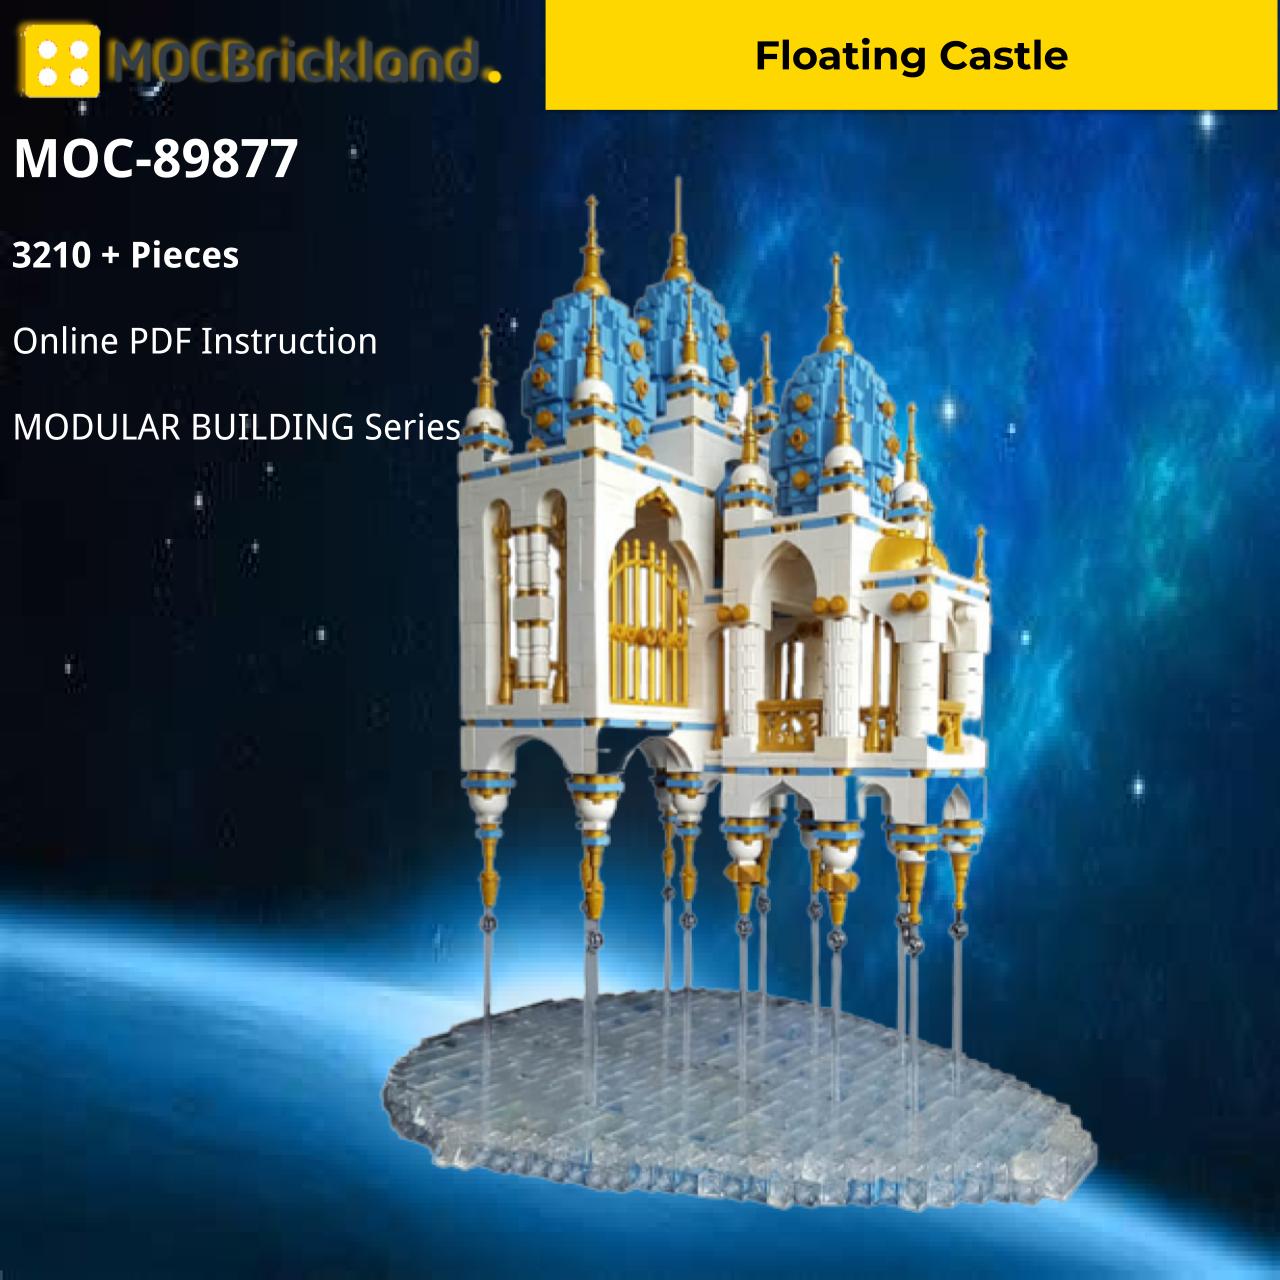 modular building moc 89877 floating castle mocbrickland 2856